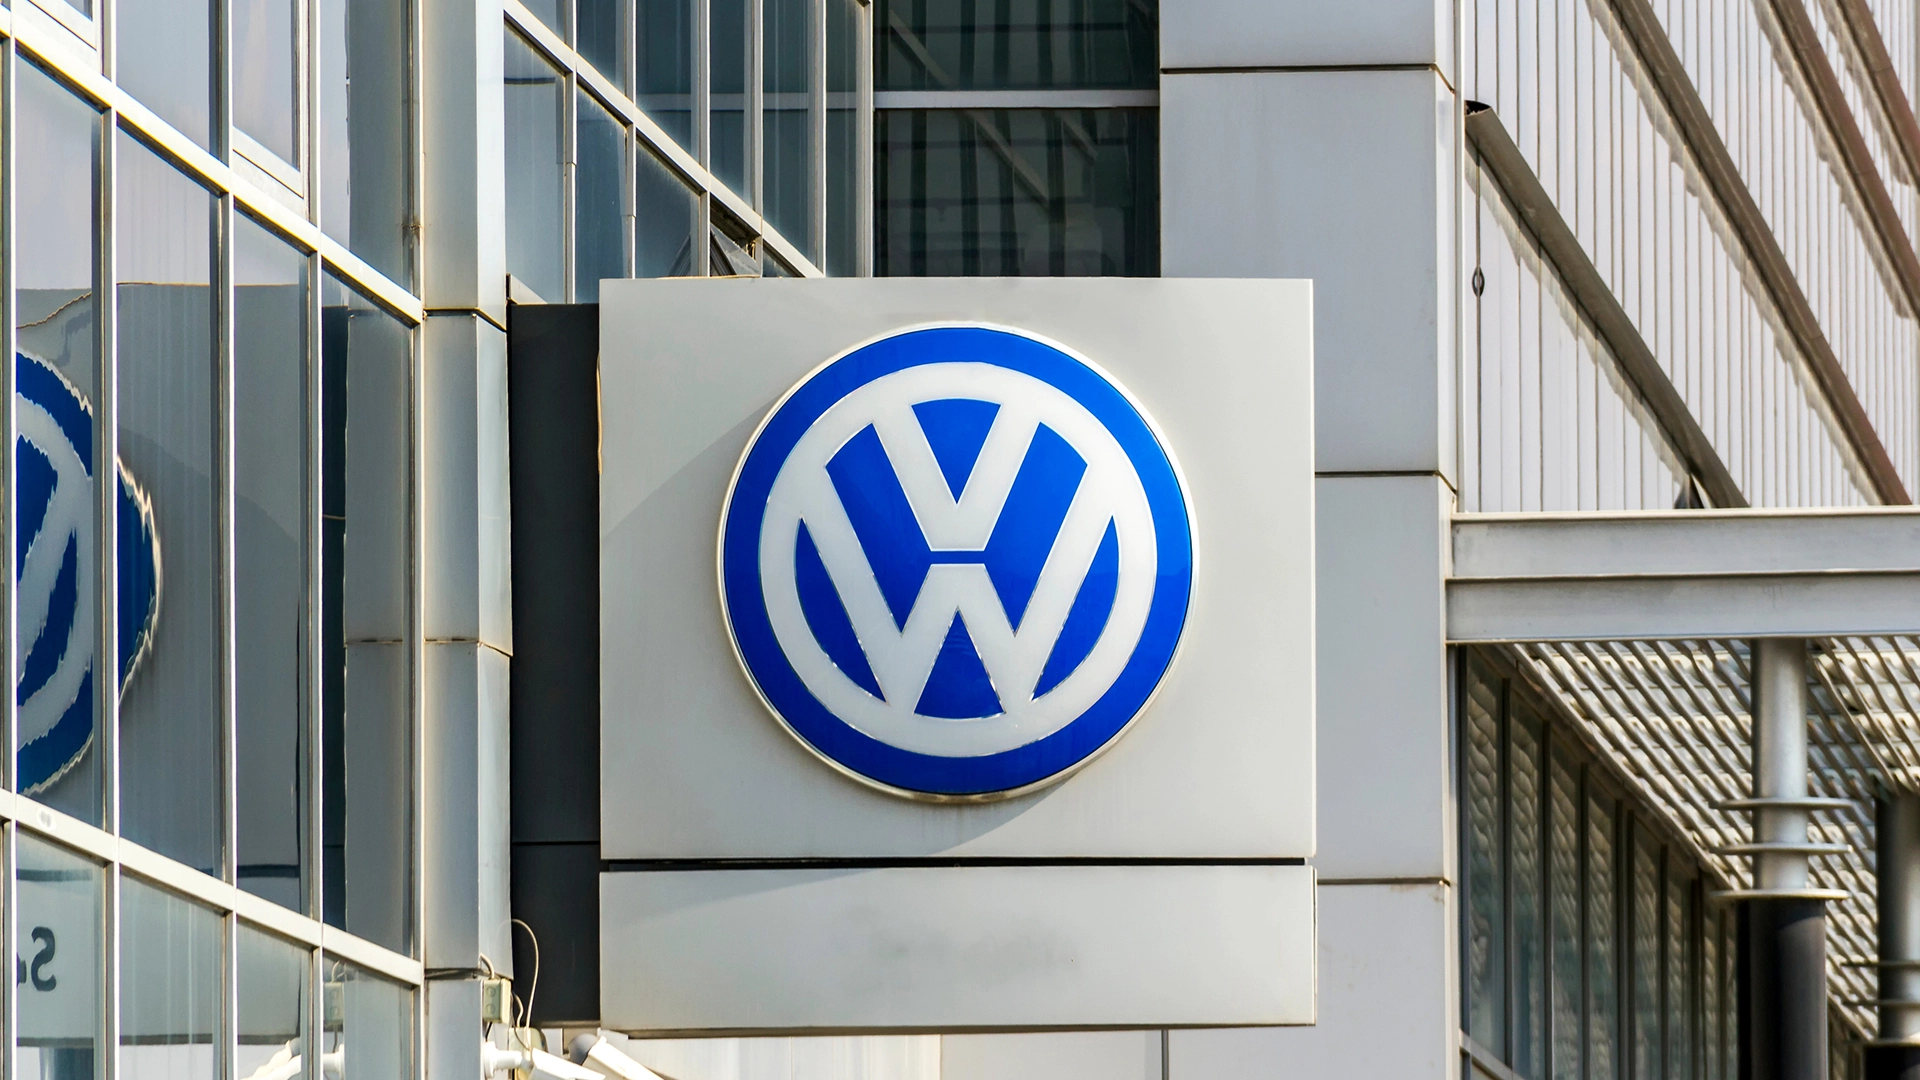 Mehr als 20% Upside bei Volkswagen-Aktie: Sollten Anleger kaufen - oder hat die Sache einen Haken? (Foto: multitel/Shutterstock)